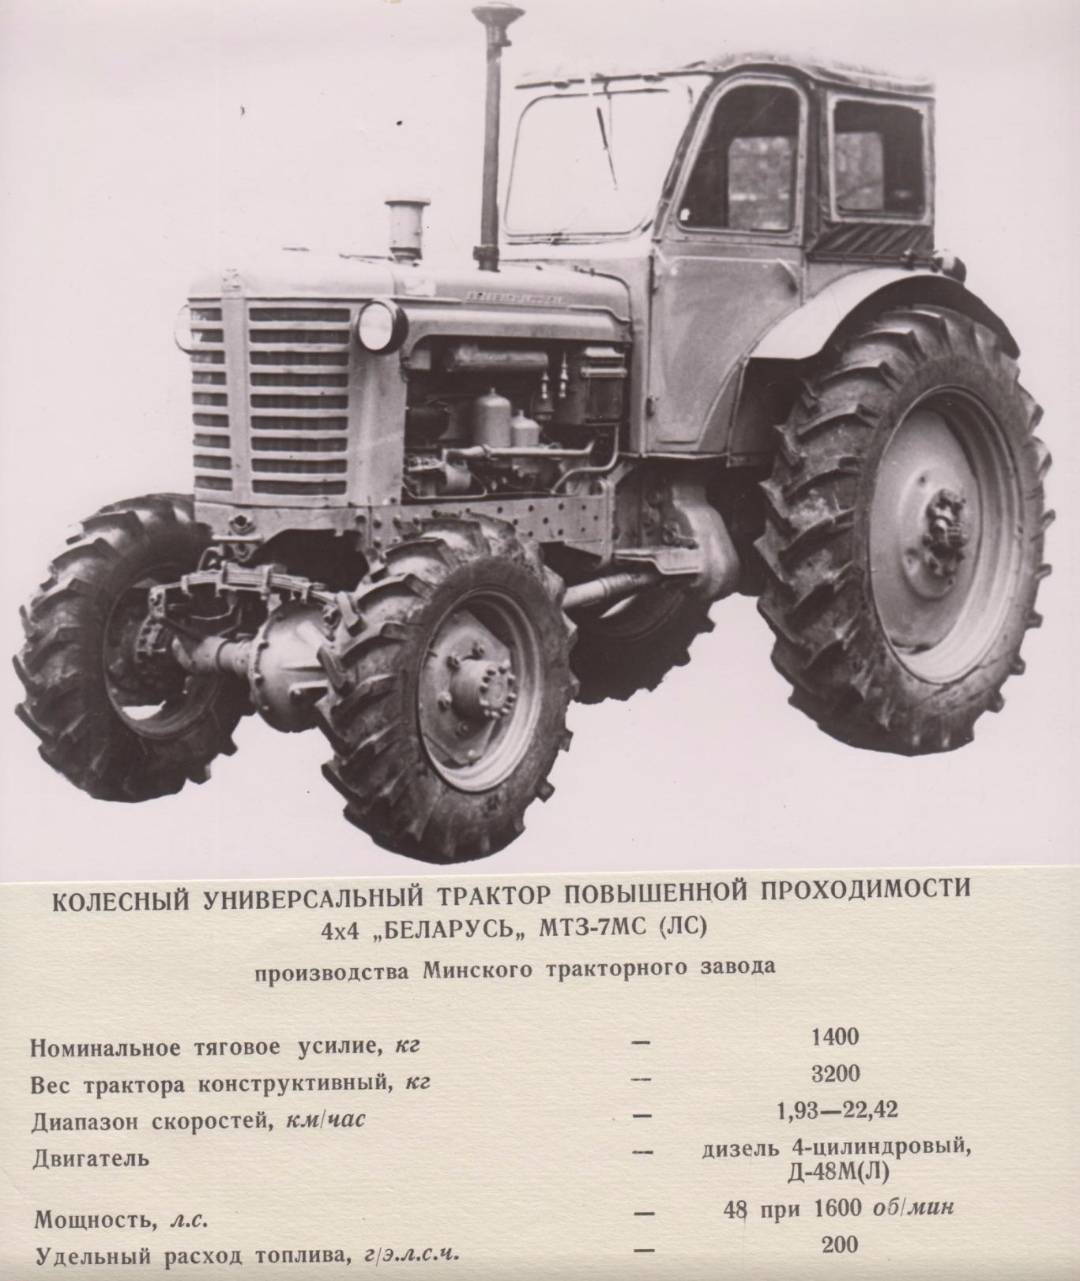 Трактор мтз-50: технические характеристики, двигатель, коробка